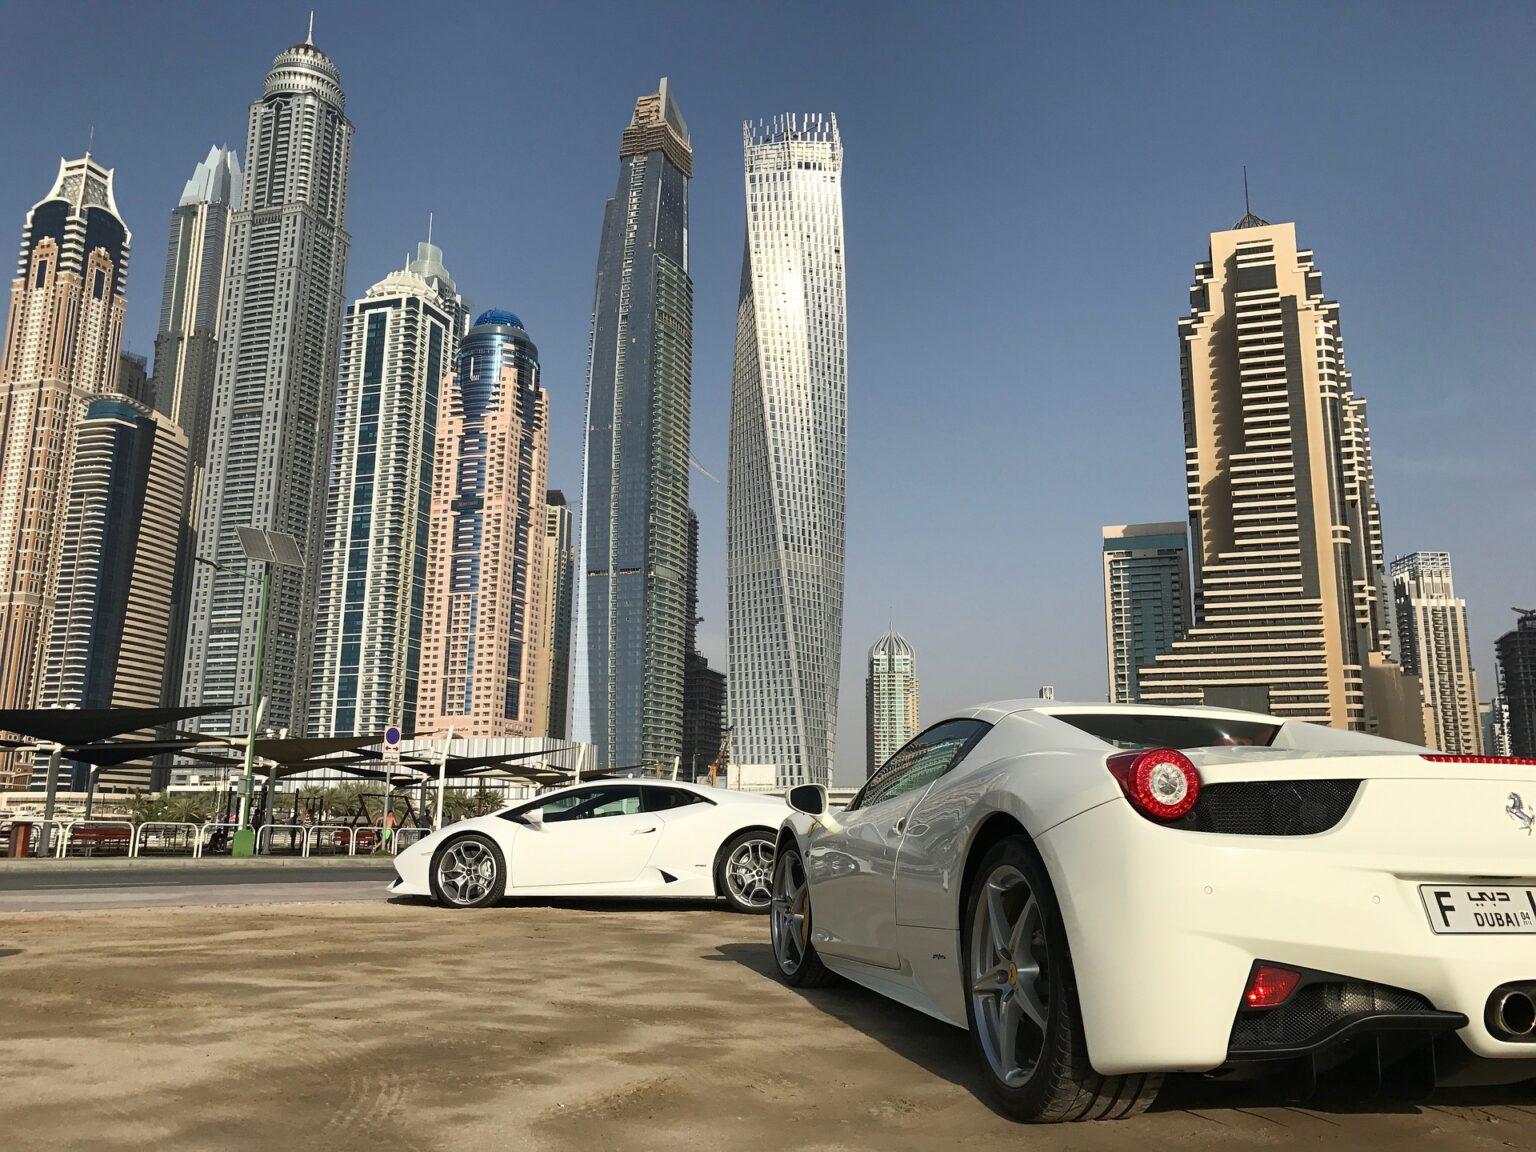 Landmarks in Dubai